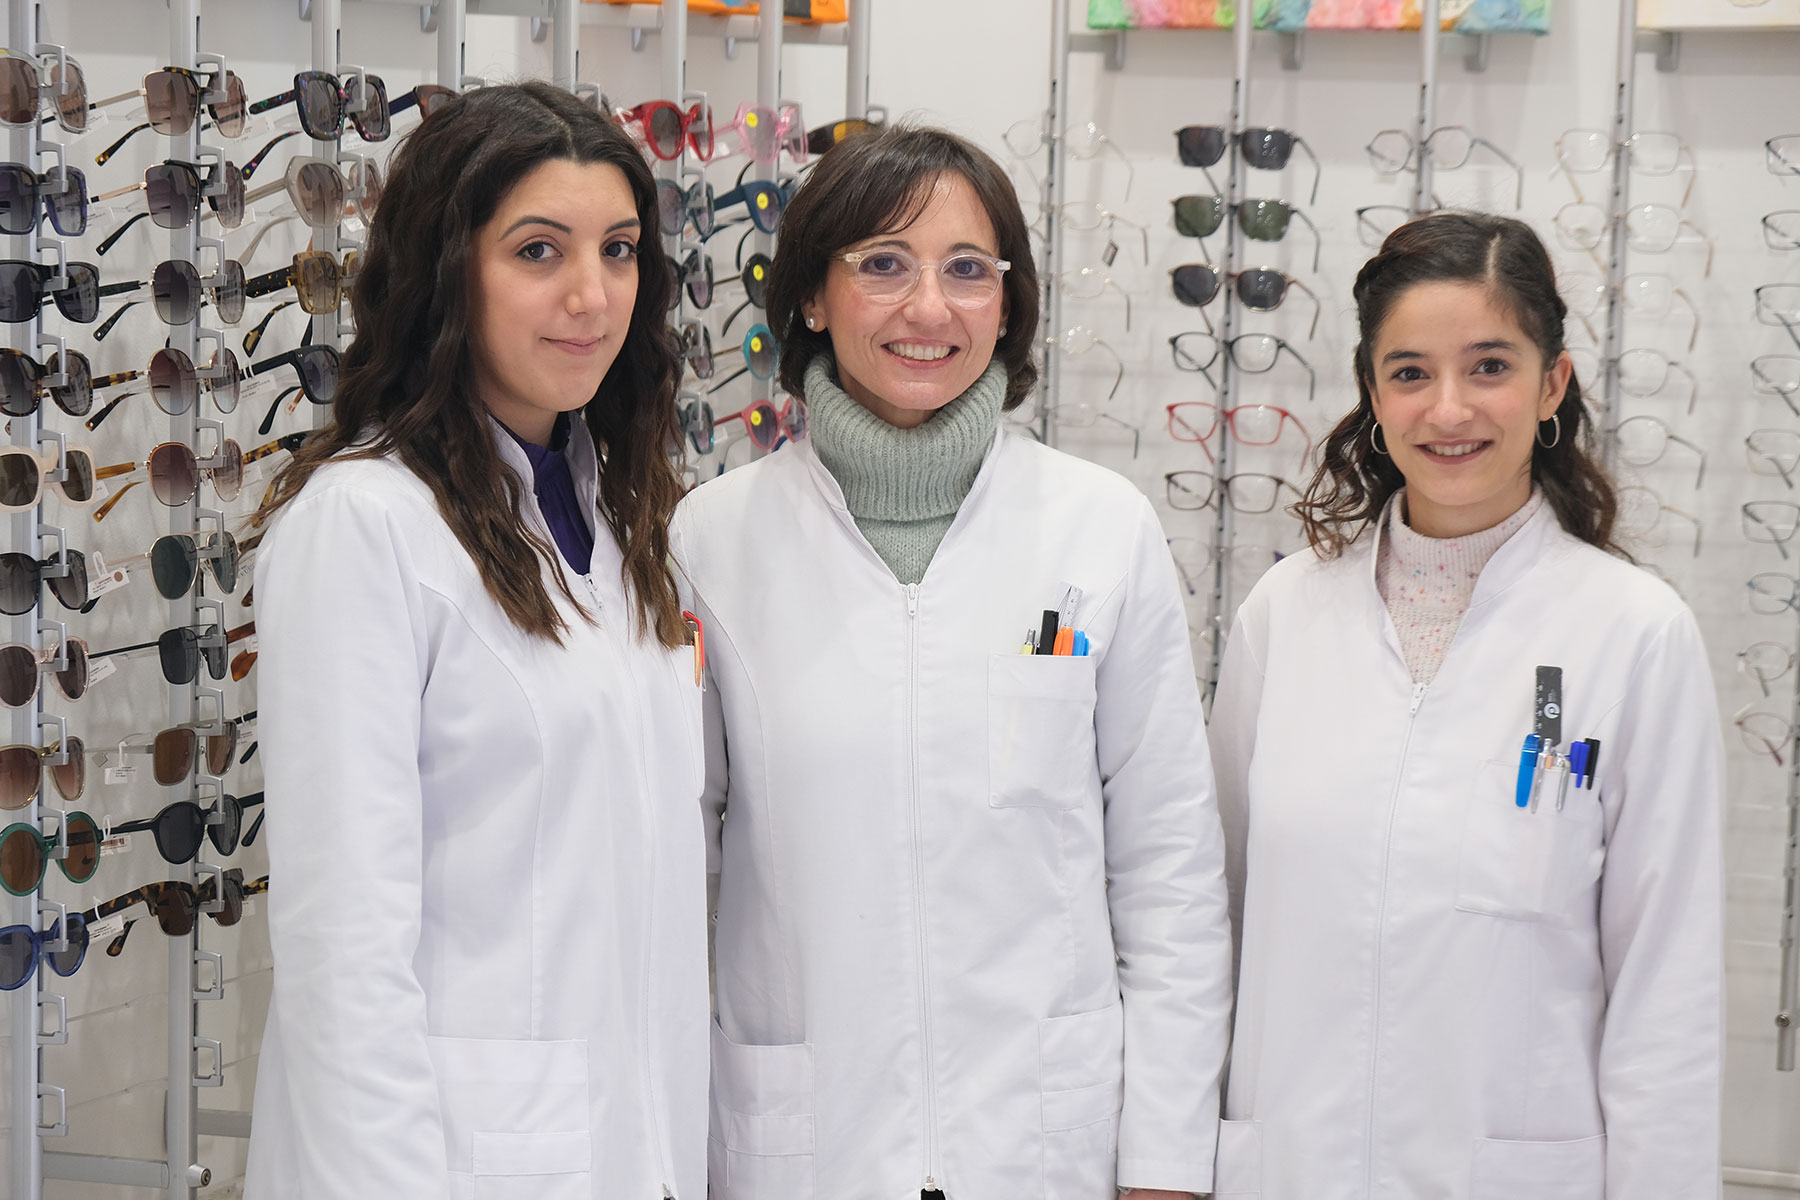 Noemí, Nerea y Lorena (personal de la óptica) posando frente a un stand lleno de modelos de gafas.